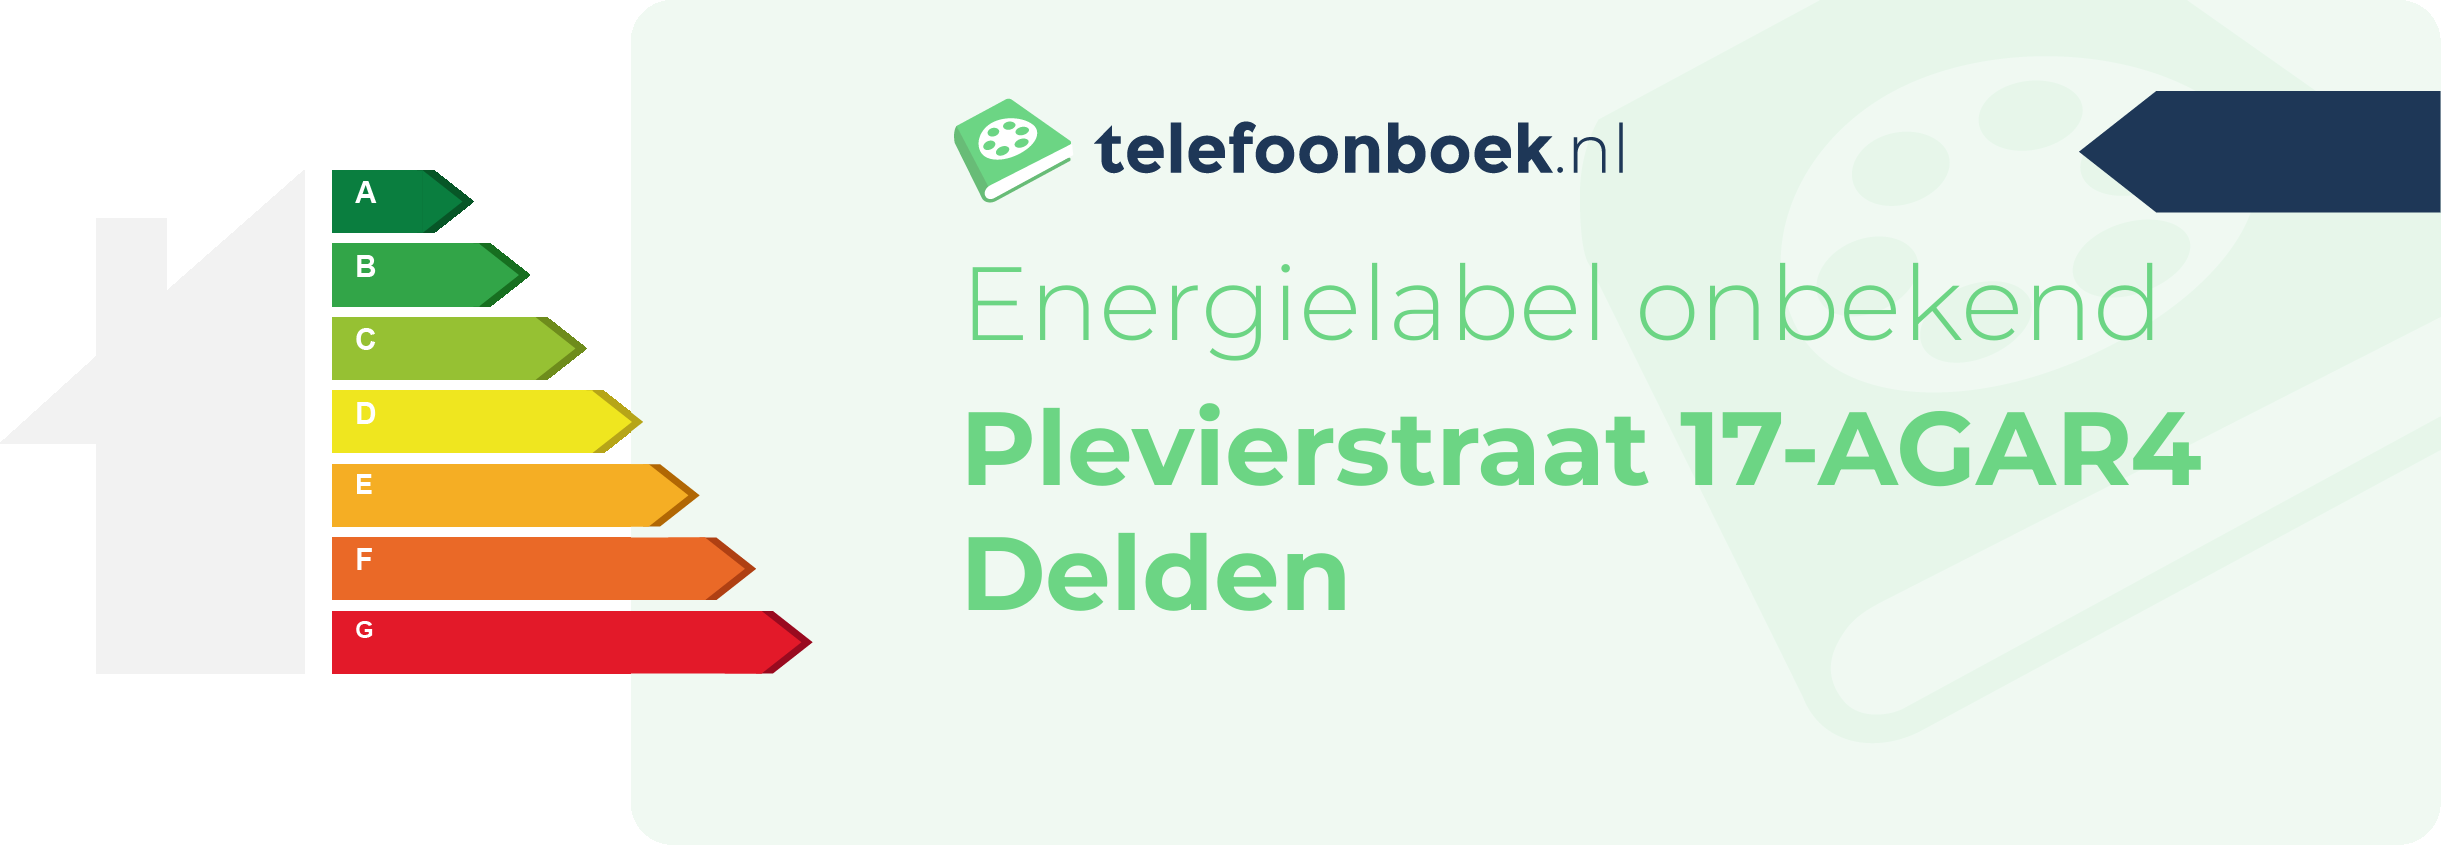 Energielabel Plevierstraat 17-AGAR4 Delden